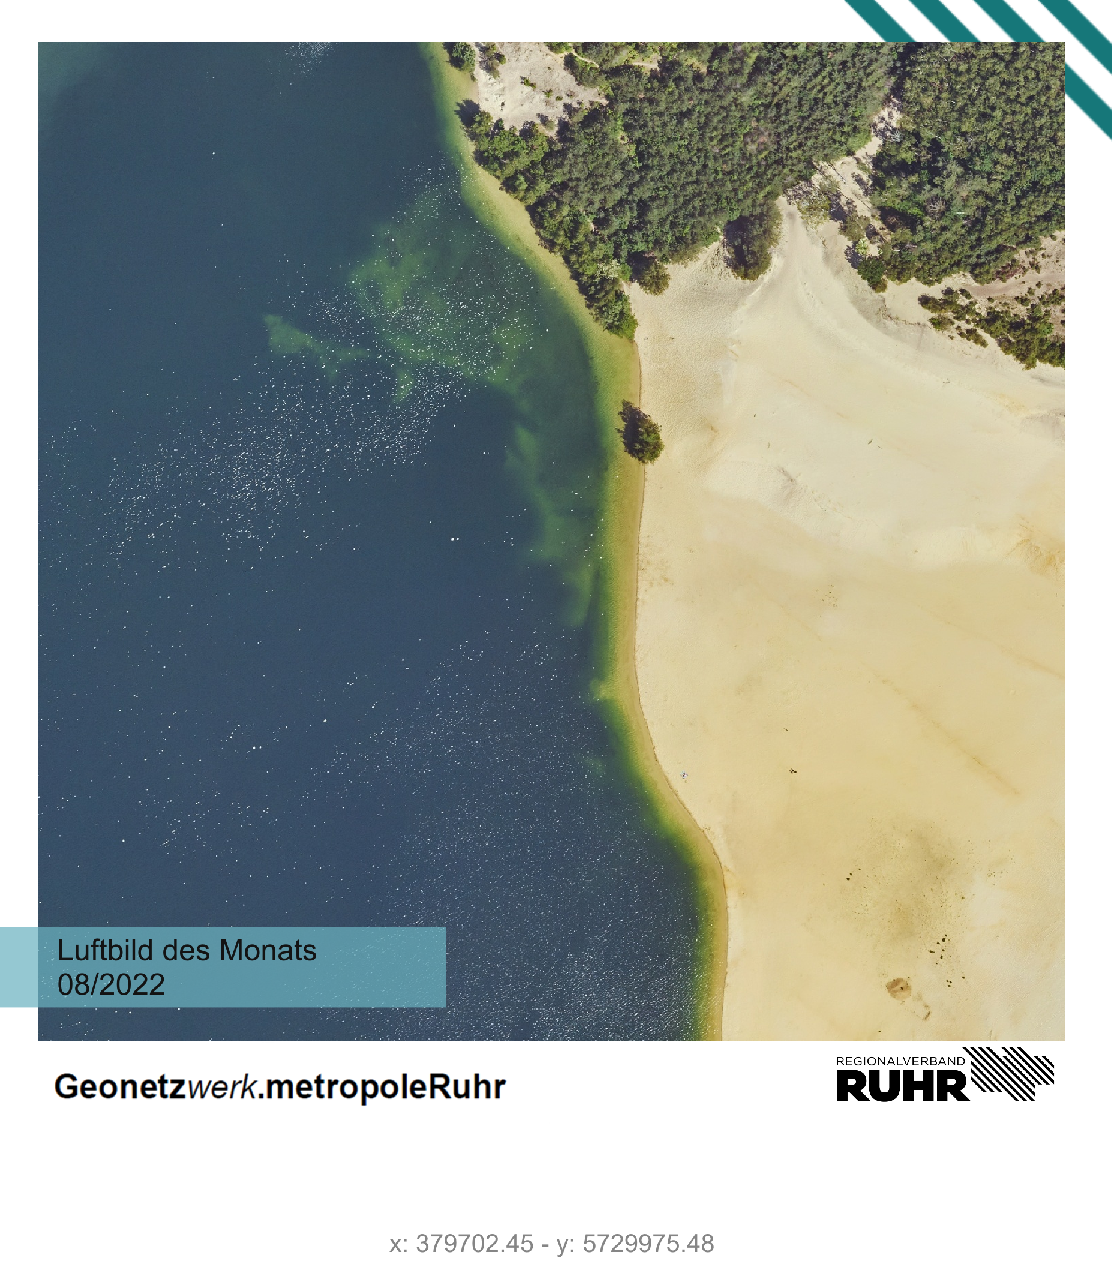 Luftbild des Monats August 2022 mit dem Baggersee Westleven bei Haltern am See.